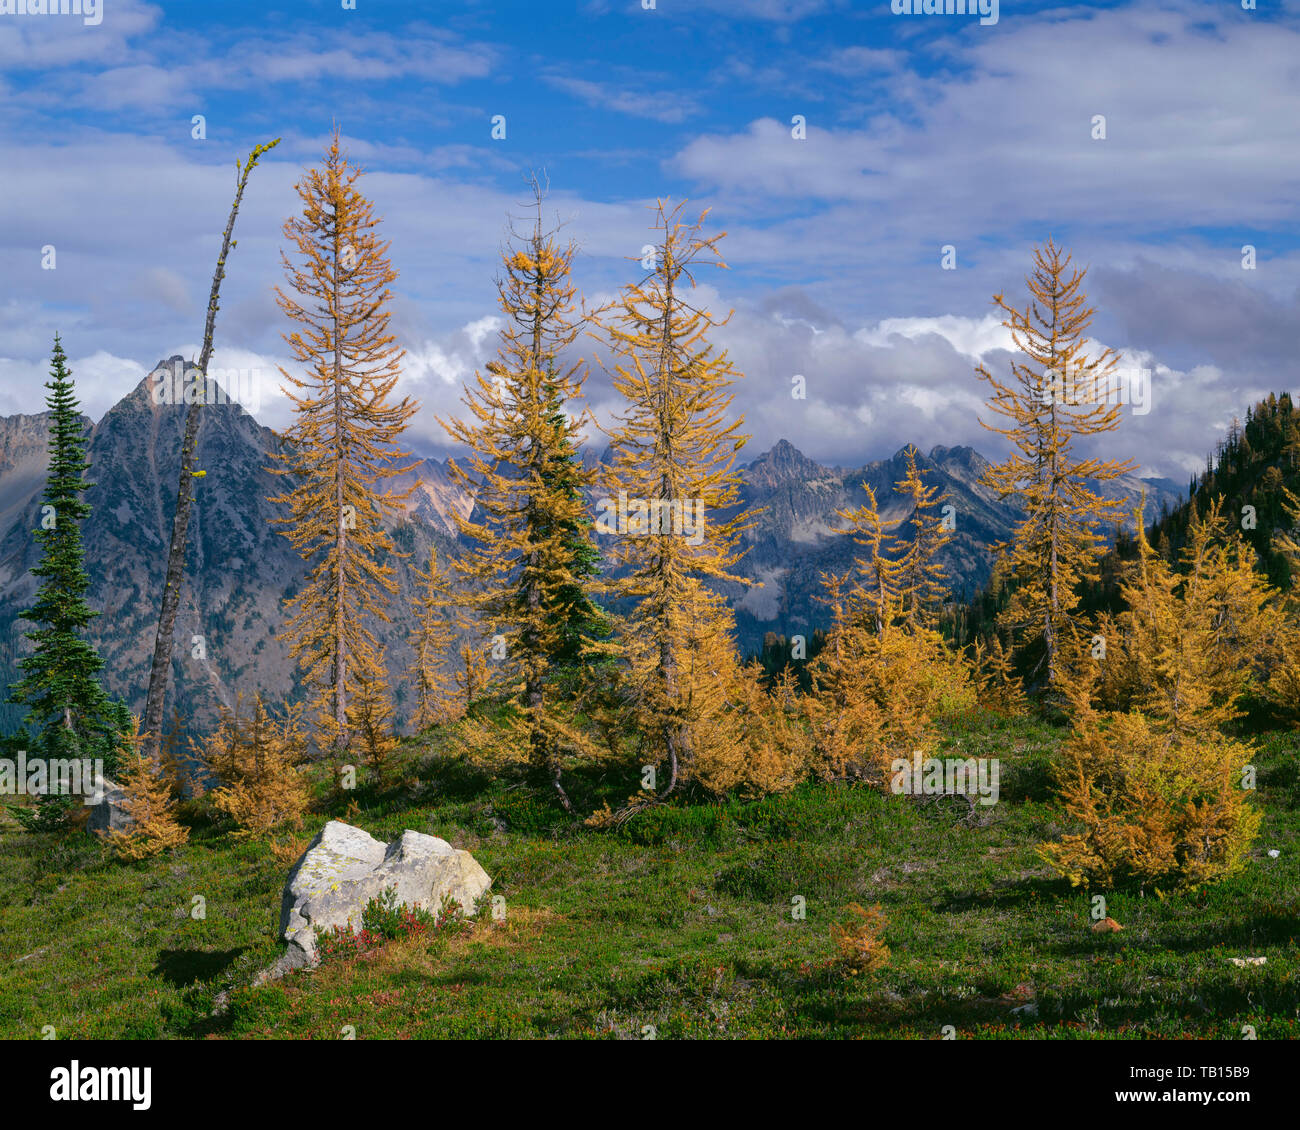 USA, Washington, Okanogan-Wenatchee National Forest, Fallen - farbige alpine Lärche frame Gipfel der Norden - zentrales Kaskaden, Aus in der Nähe von Ahorn. Stockfoto